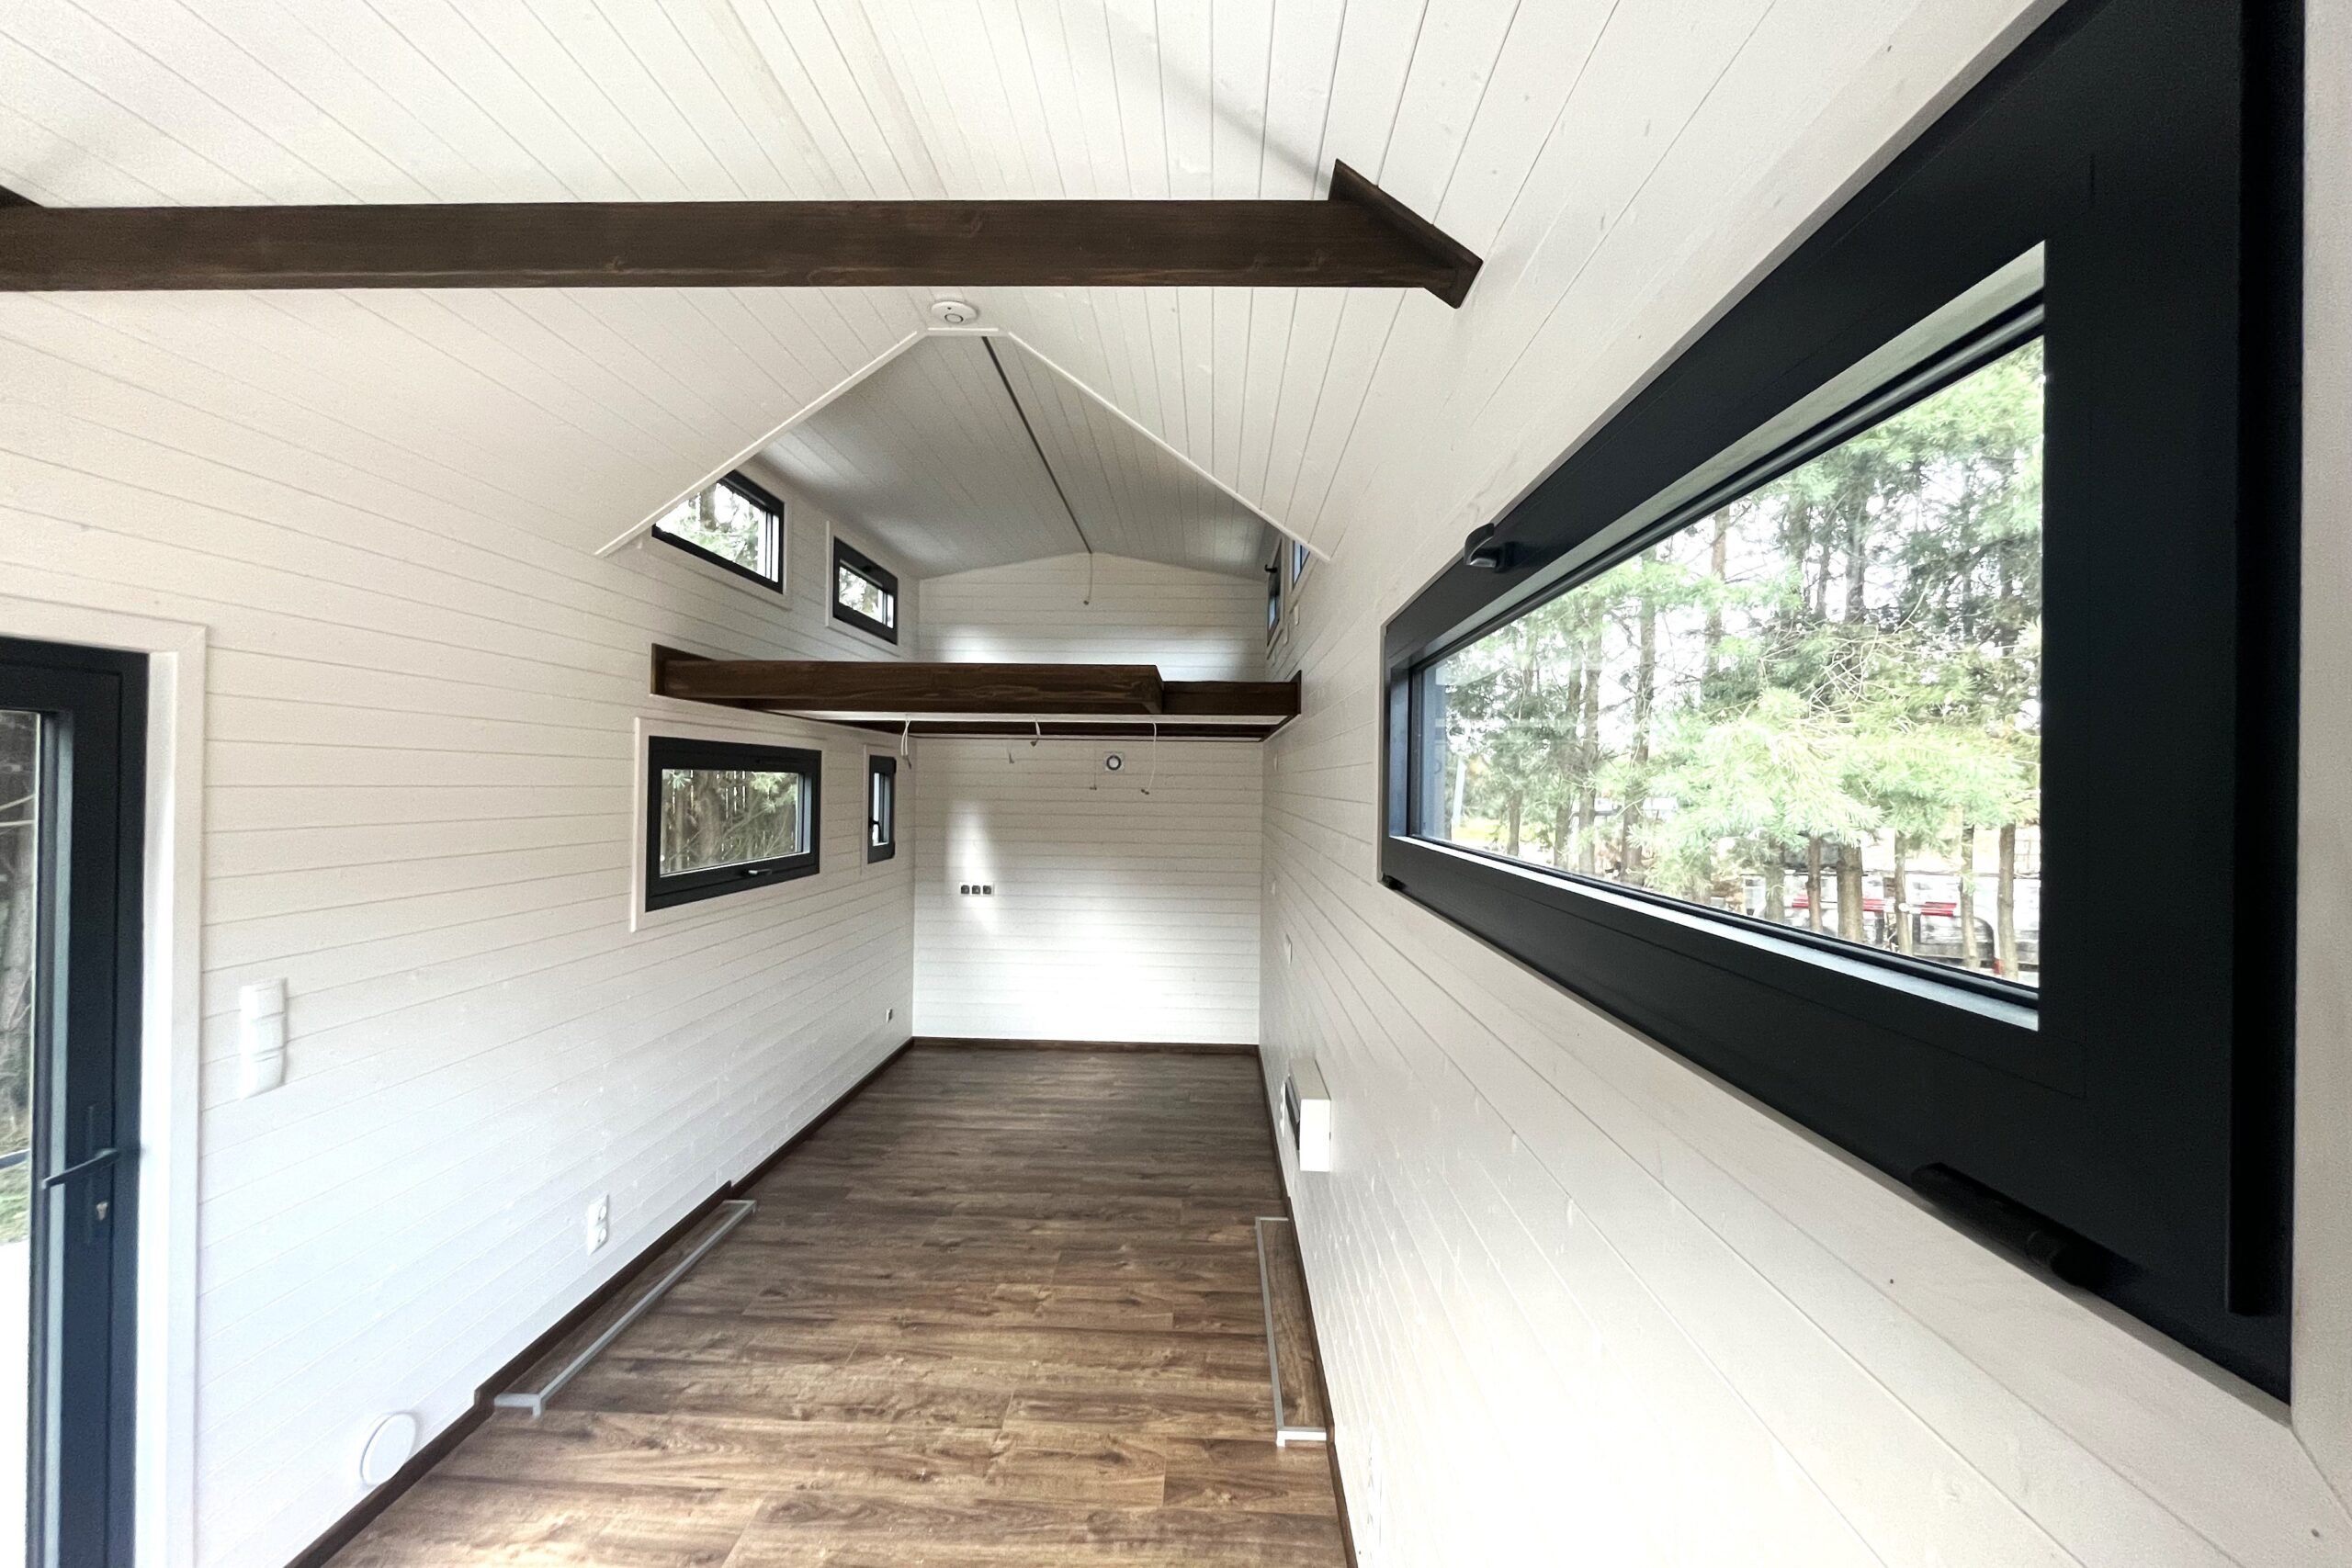 Tiny house grise extérieur, intérieur blanc : une élégante résidence compacte aux couleurs contrastées, parfaite pour le minimalisme chic et la vie confortable.